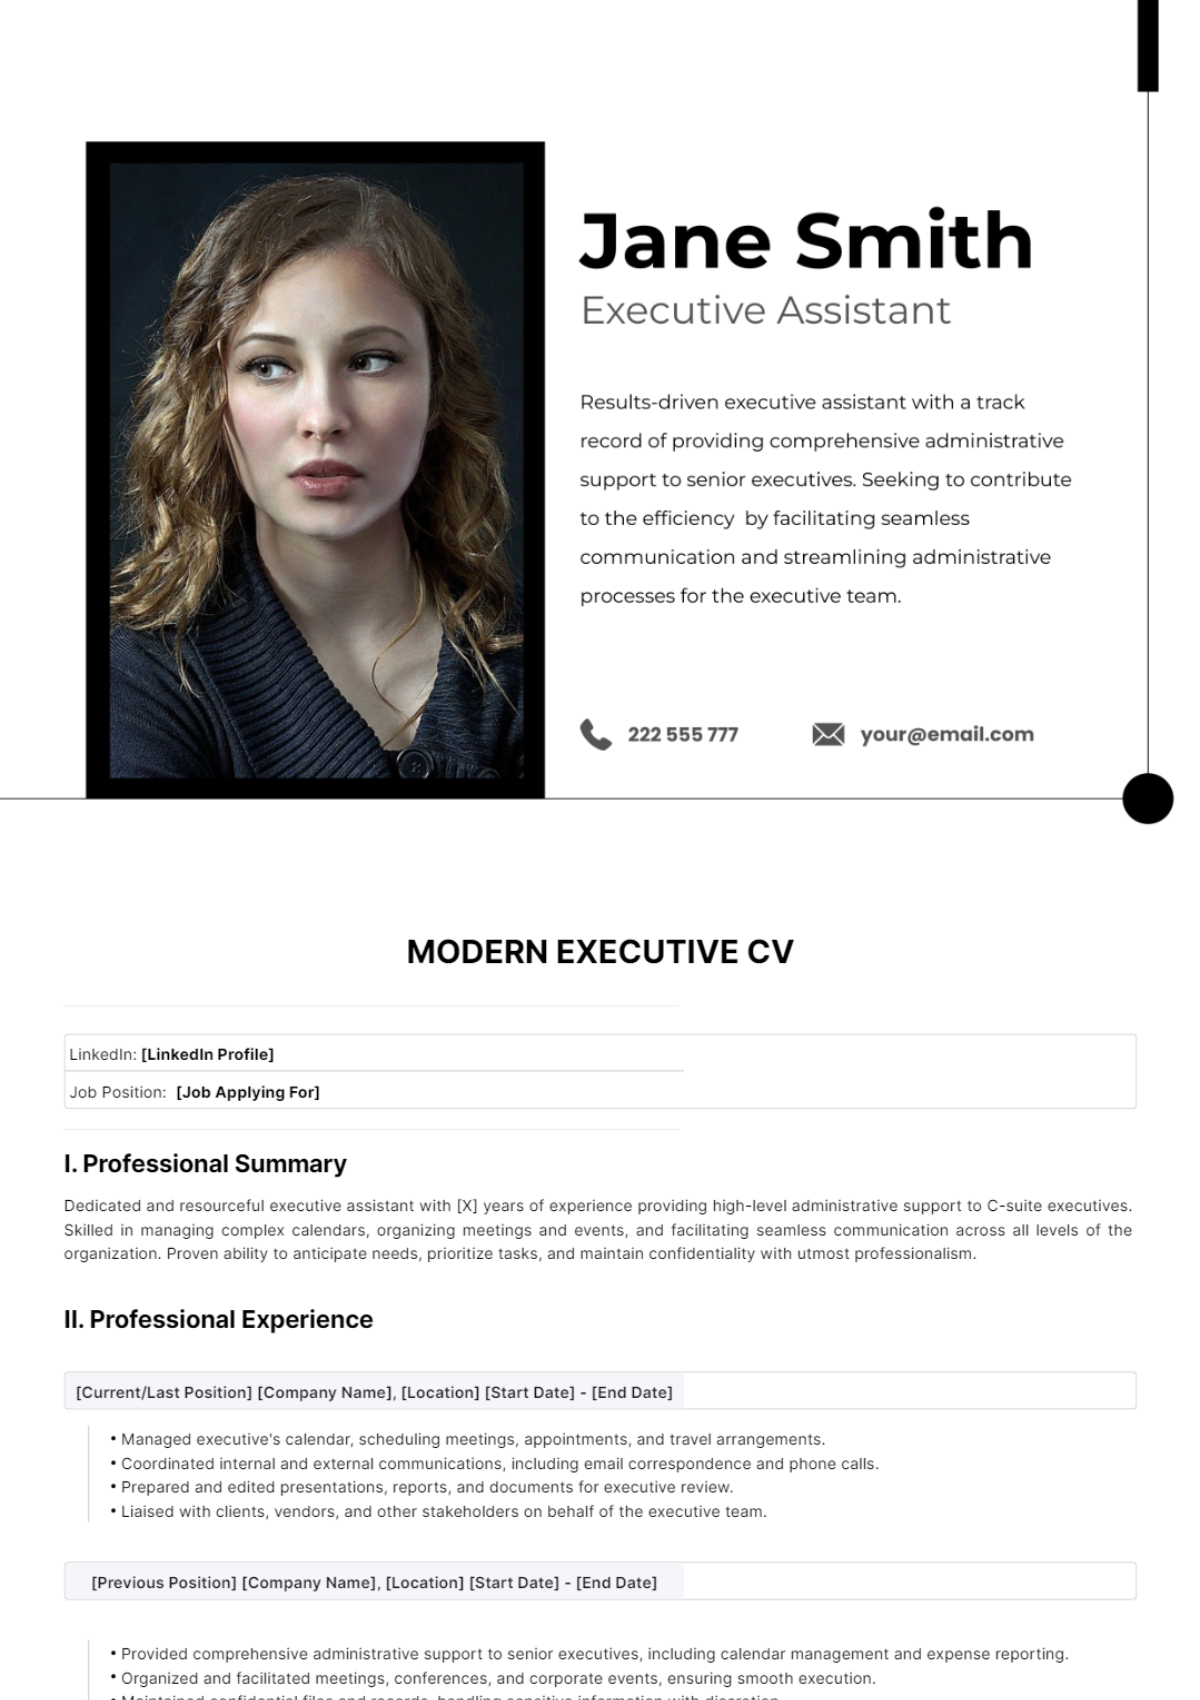 Modern Executive CV Template